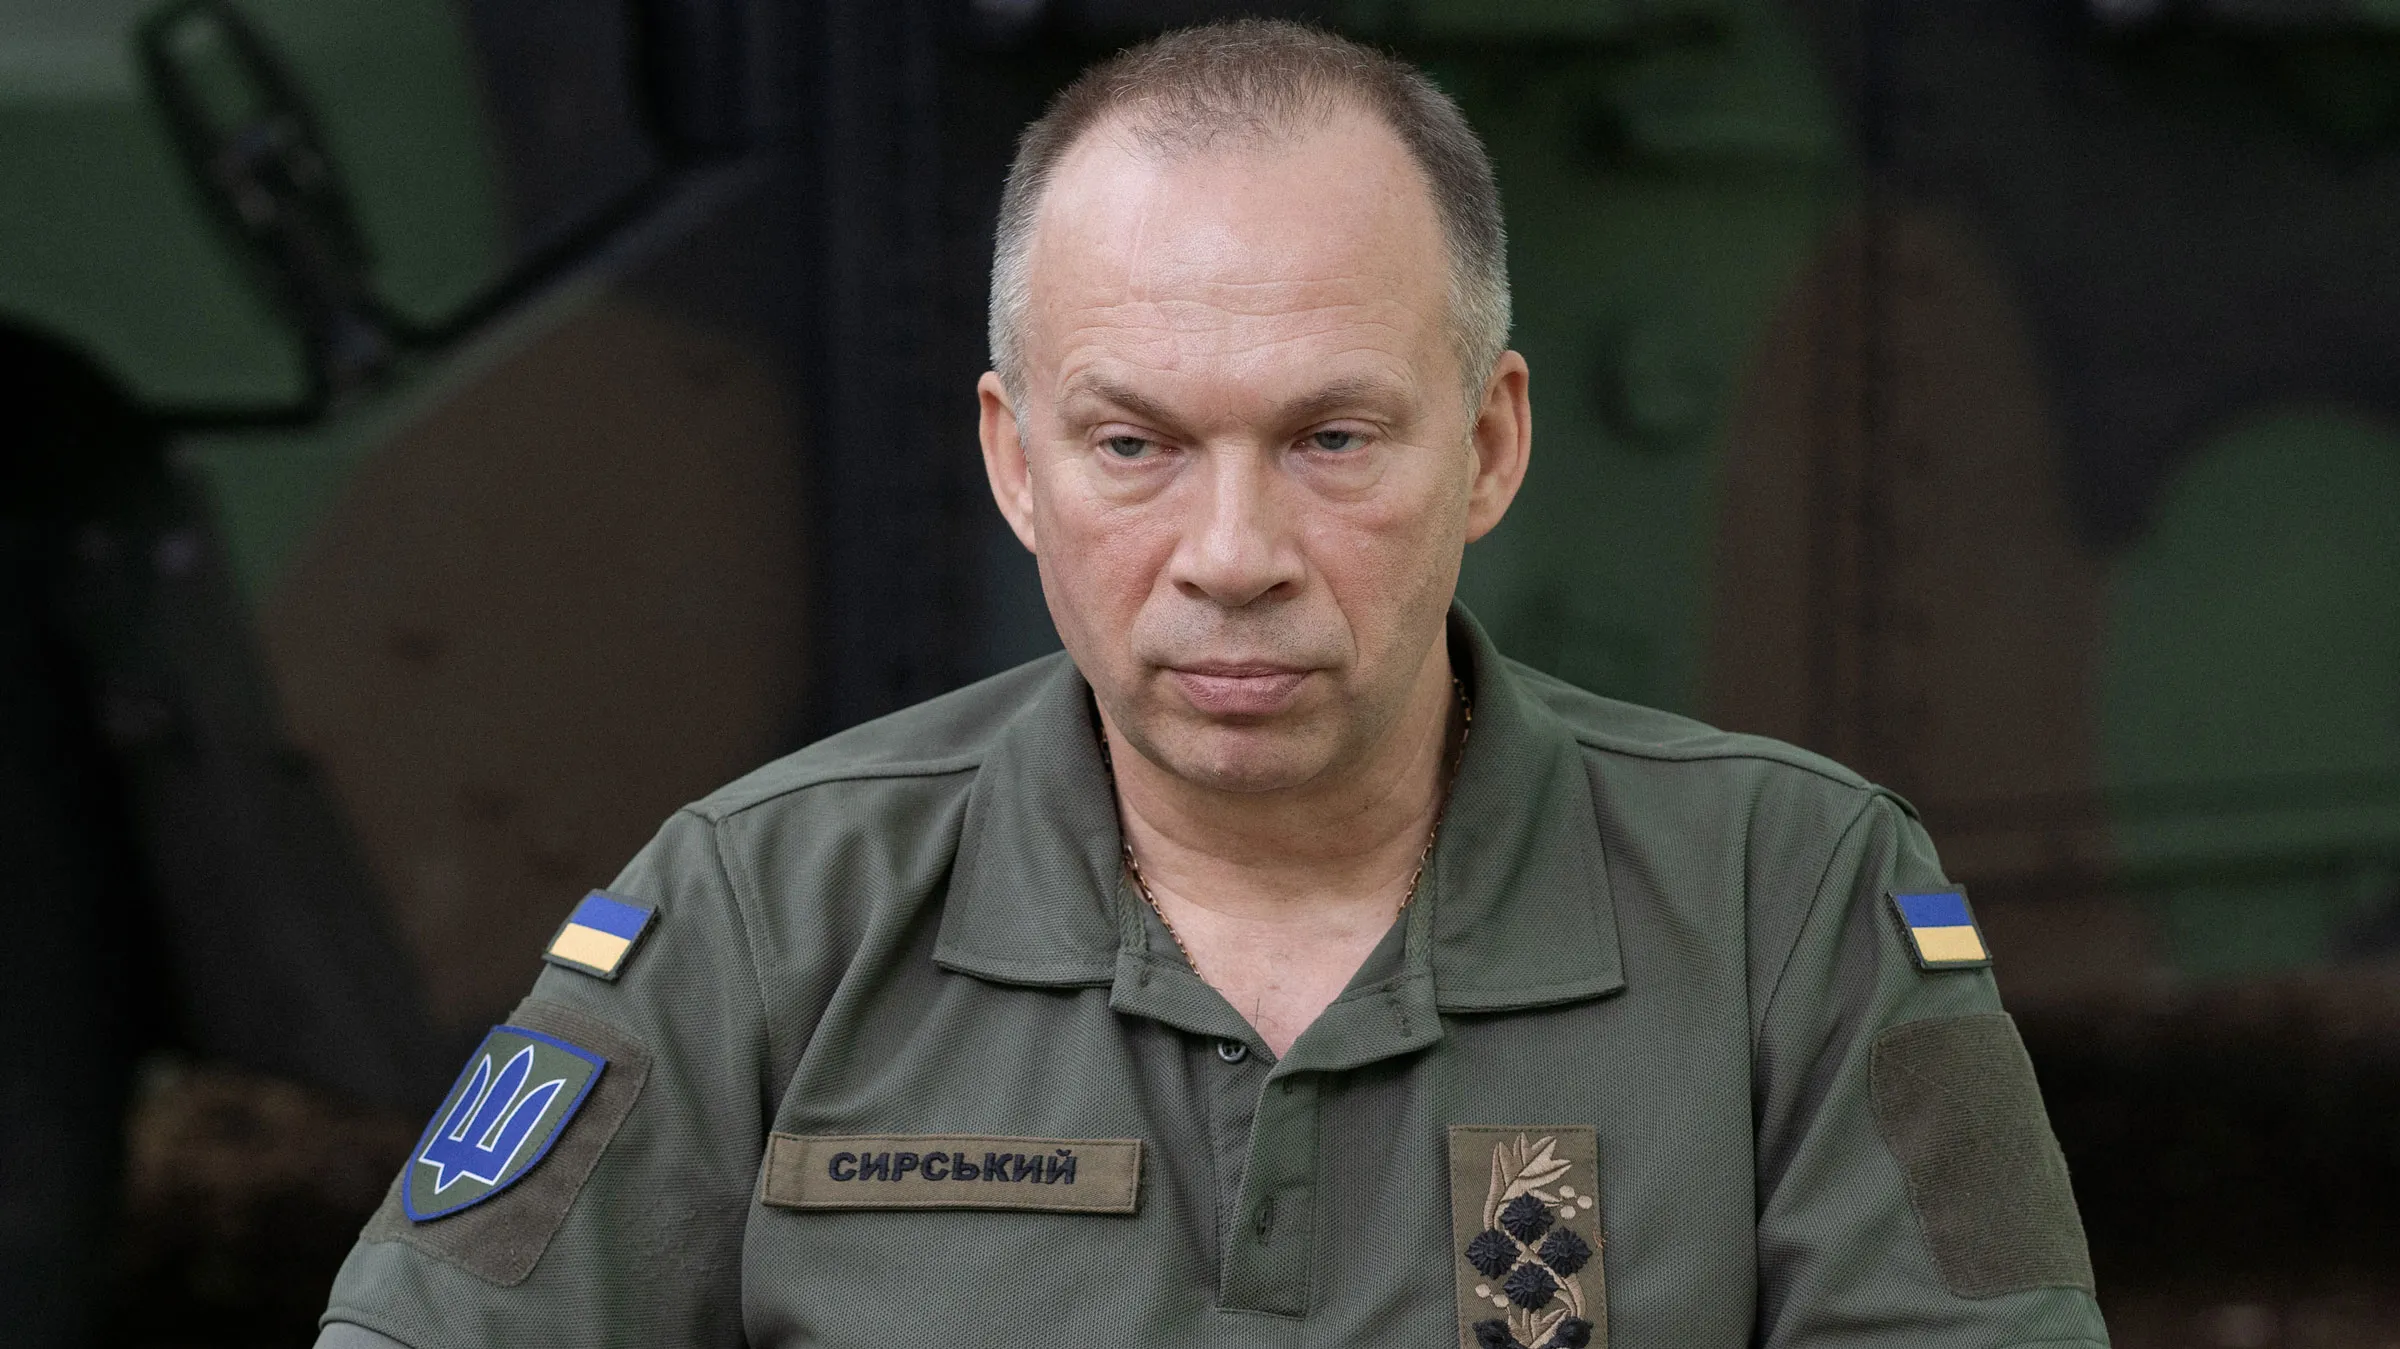 أولكسندر سيرسكي قائد جيش أوكرانيا الجديد بعد إقالة الجنرال الحديدي